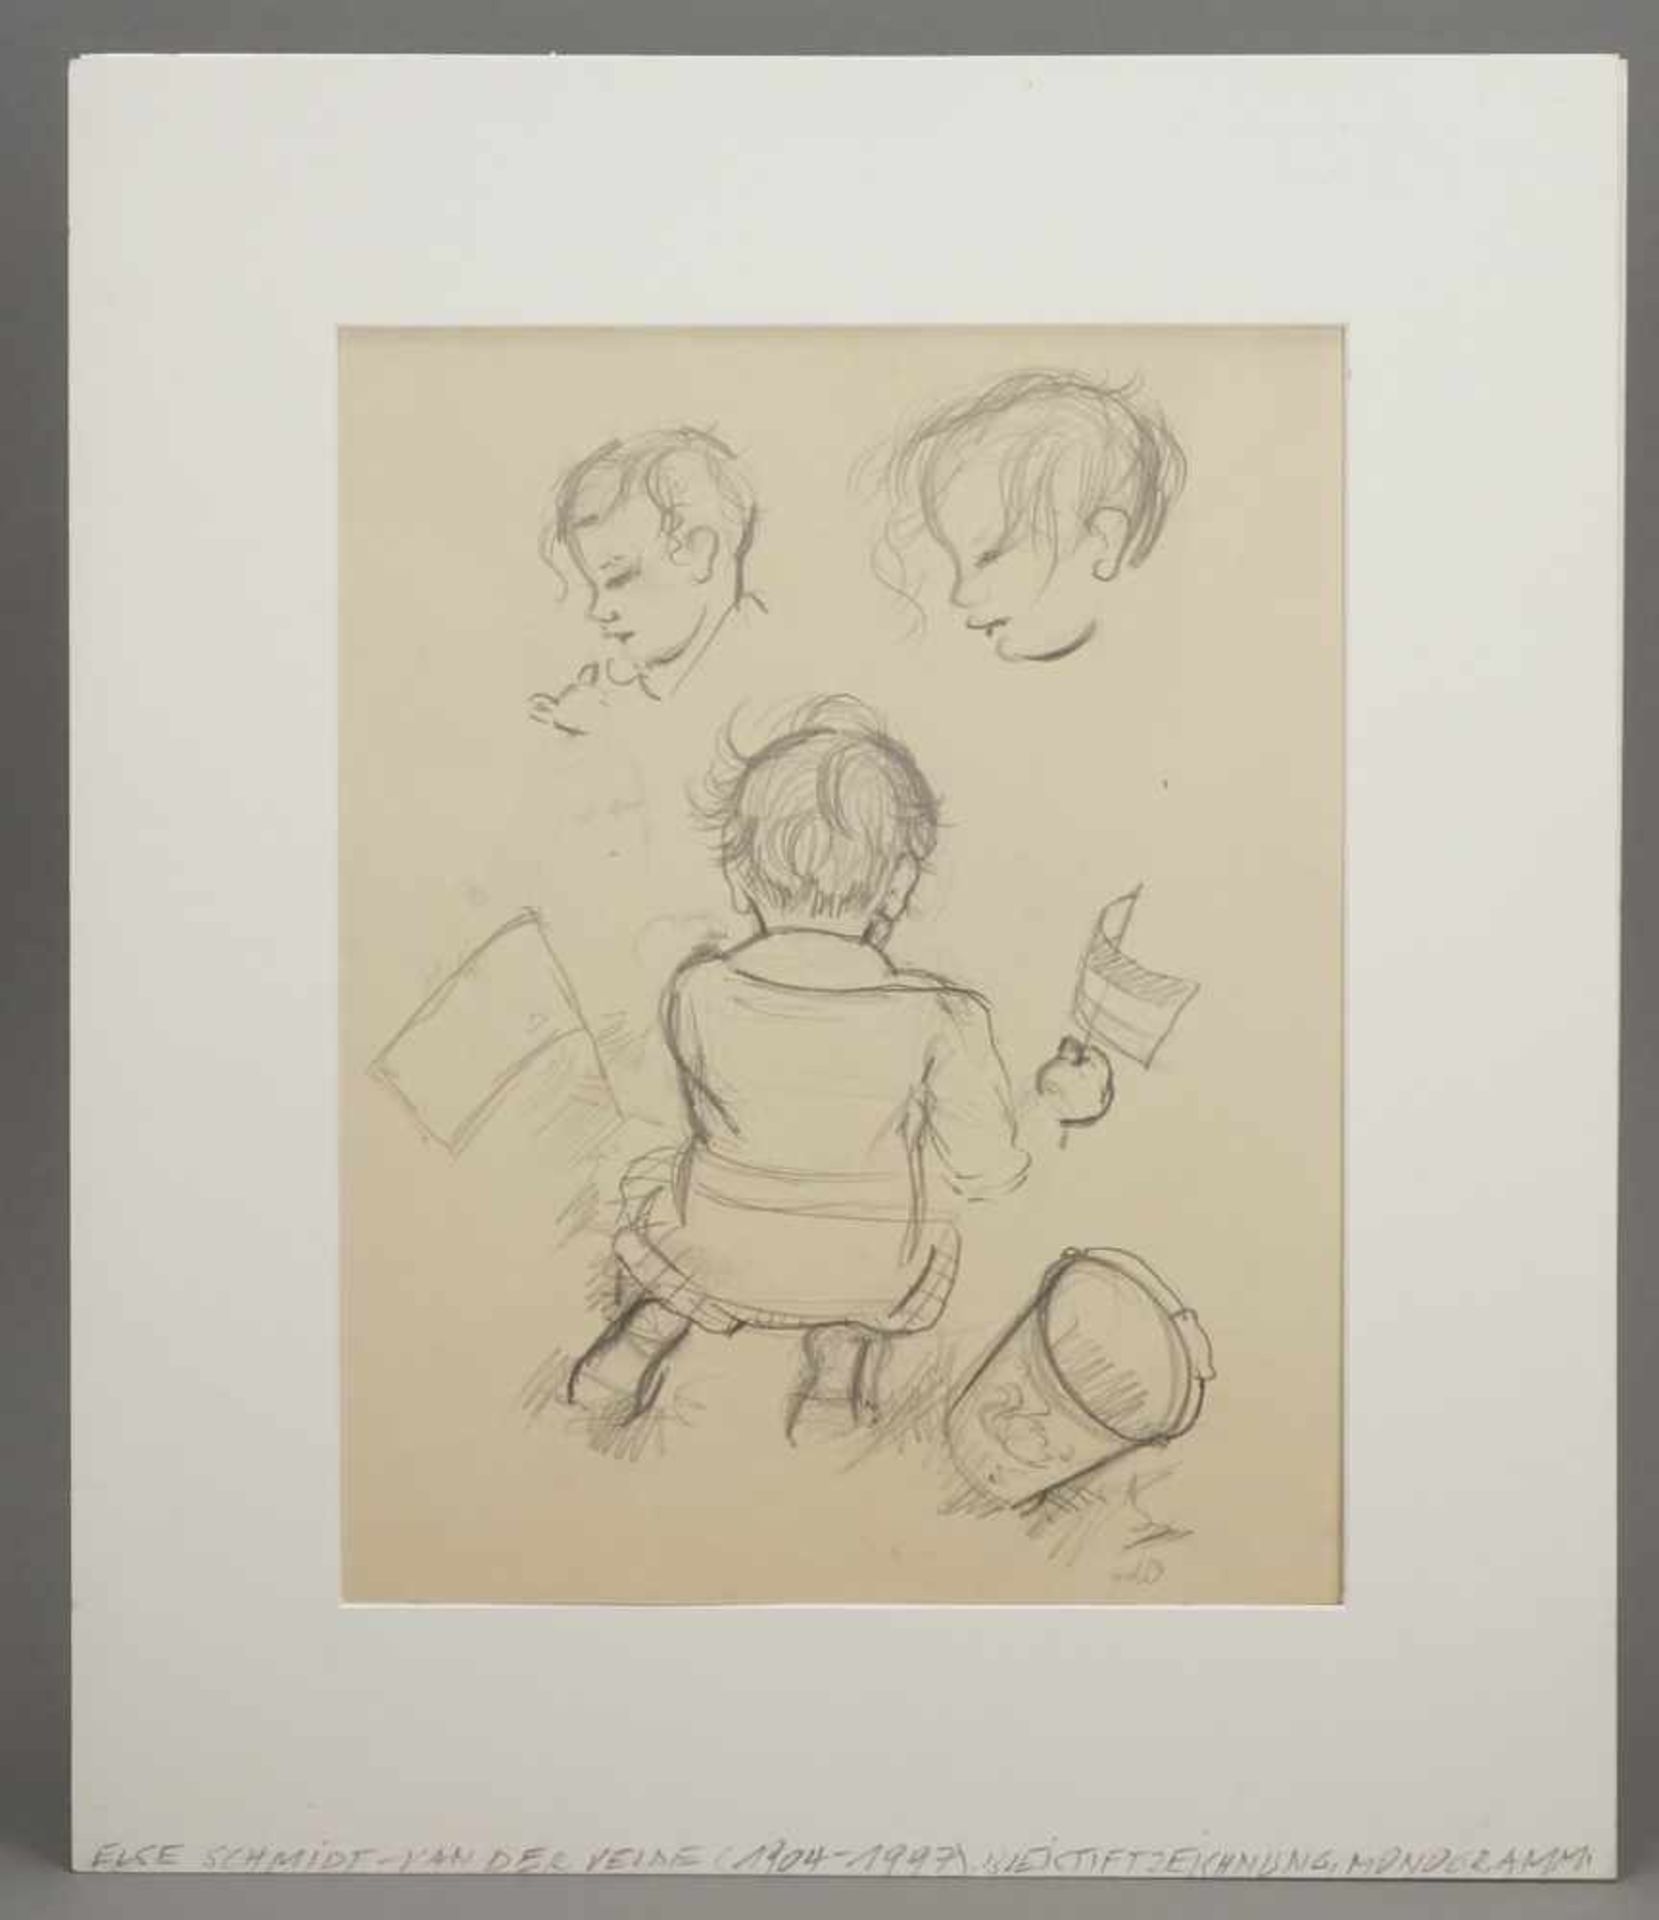 Else Schmidt van der Velde, "Kleinkindstudien" - Bild 2 aus 4